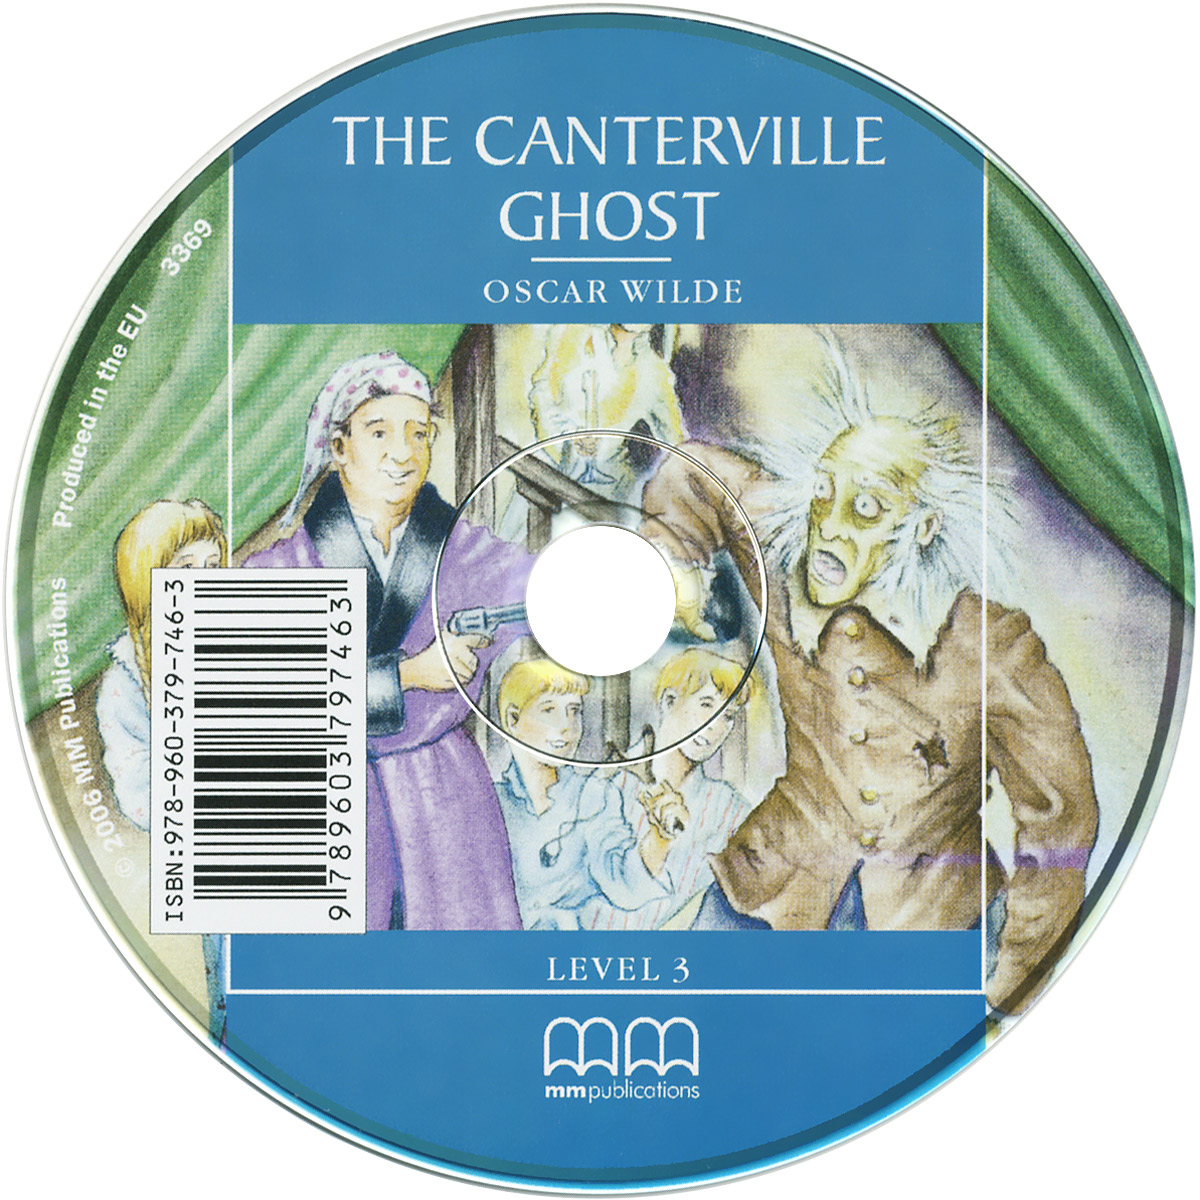 The Canterville Ghost 2 книг + случается внимательно рассматривая